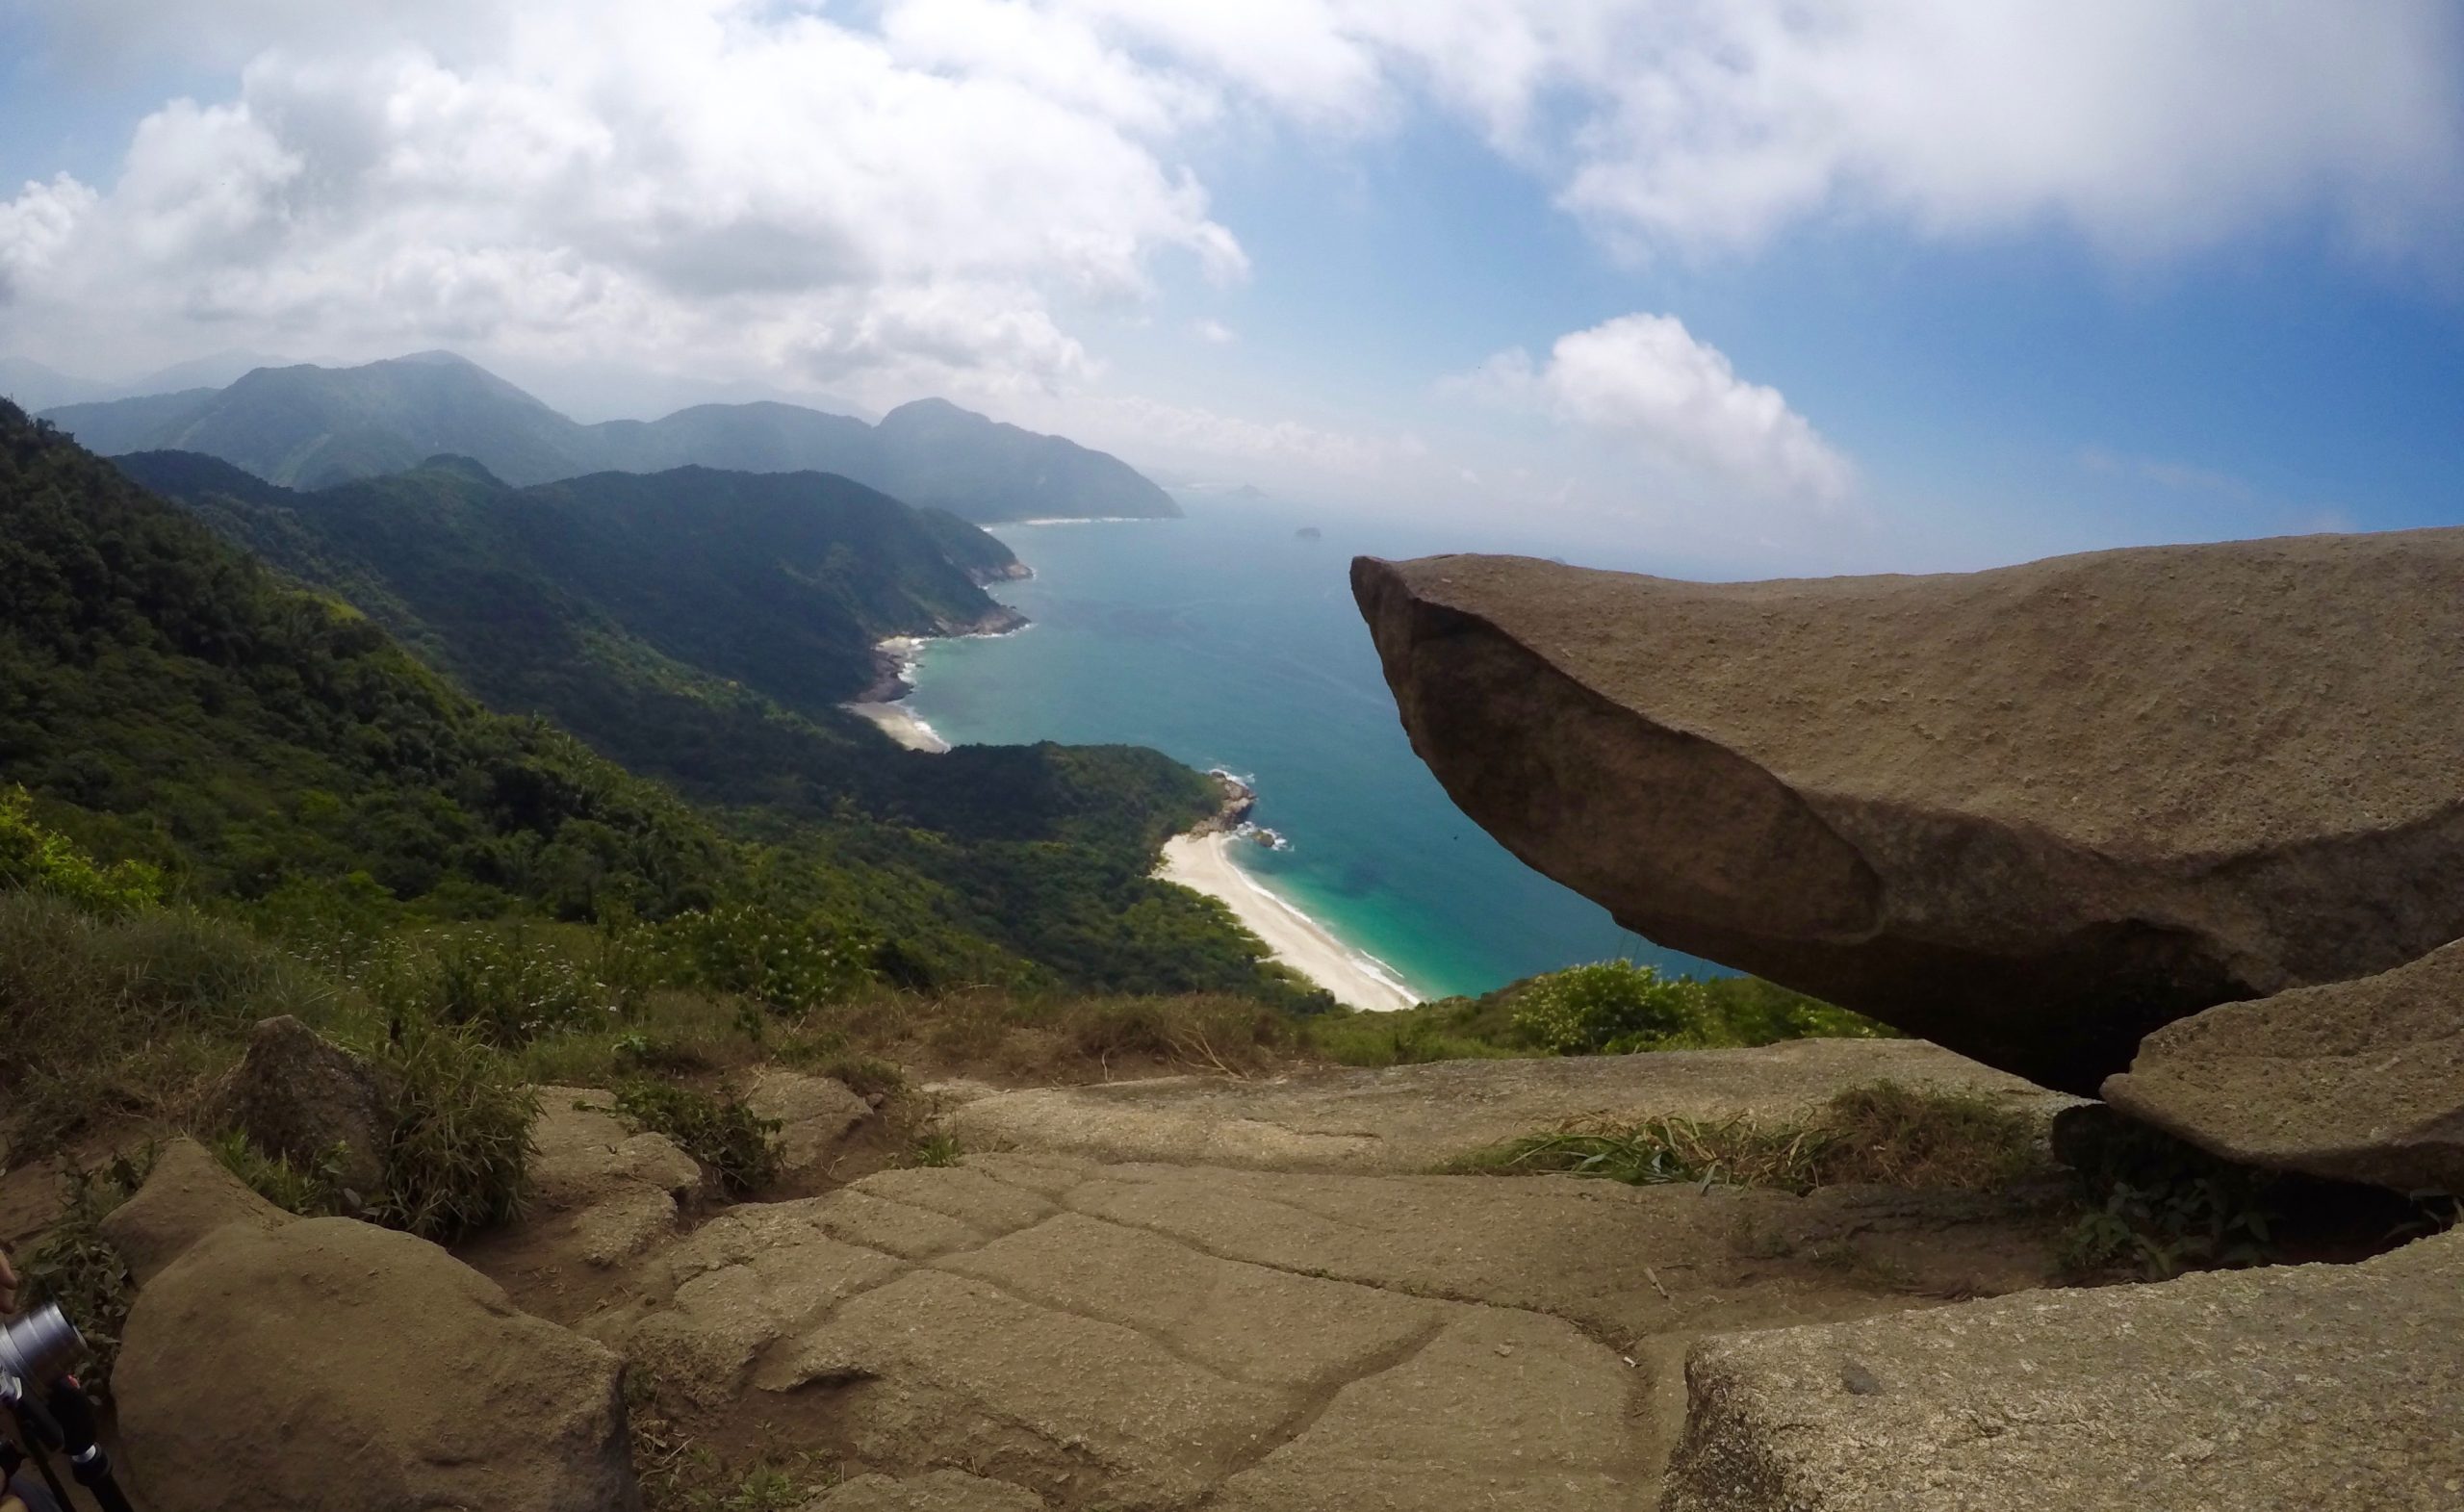 Hiking Rio de Janeiro - Pedra do Telegrafo